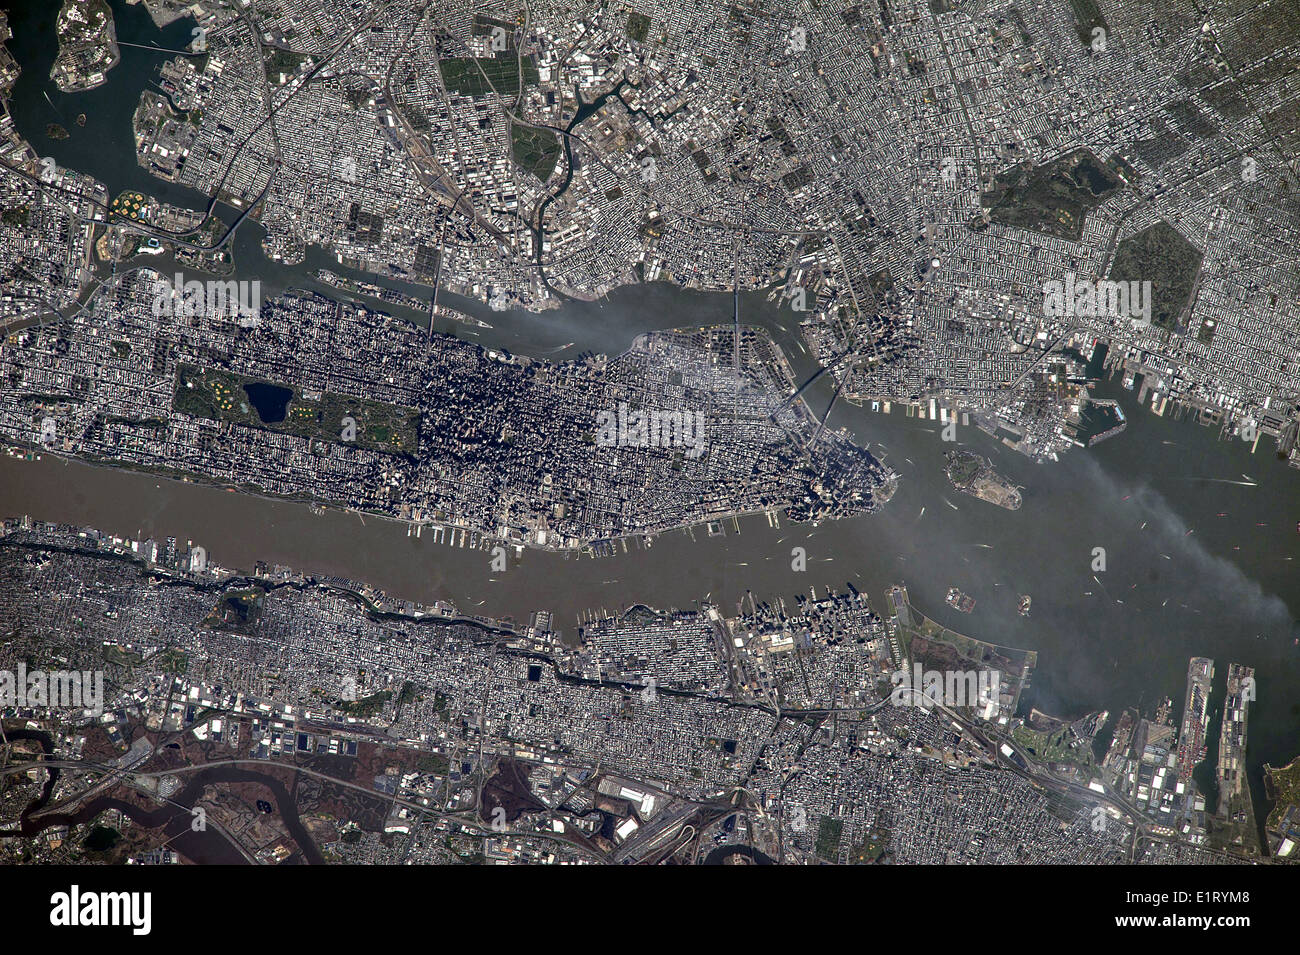 Vista desde la Estación Espacial Internacional de la ciudad de Nueva York, revelando la forma estrecha de Manhattan, situado entre el río Hudson y el East River el 5 de mayo de 2014. Foto de stock